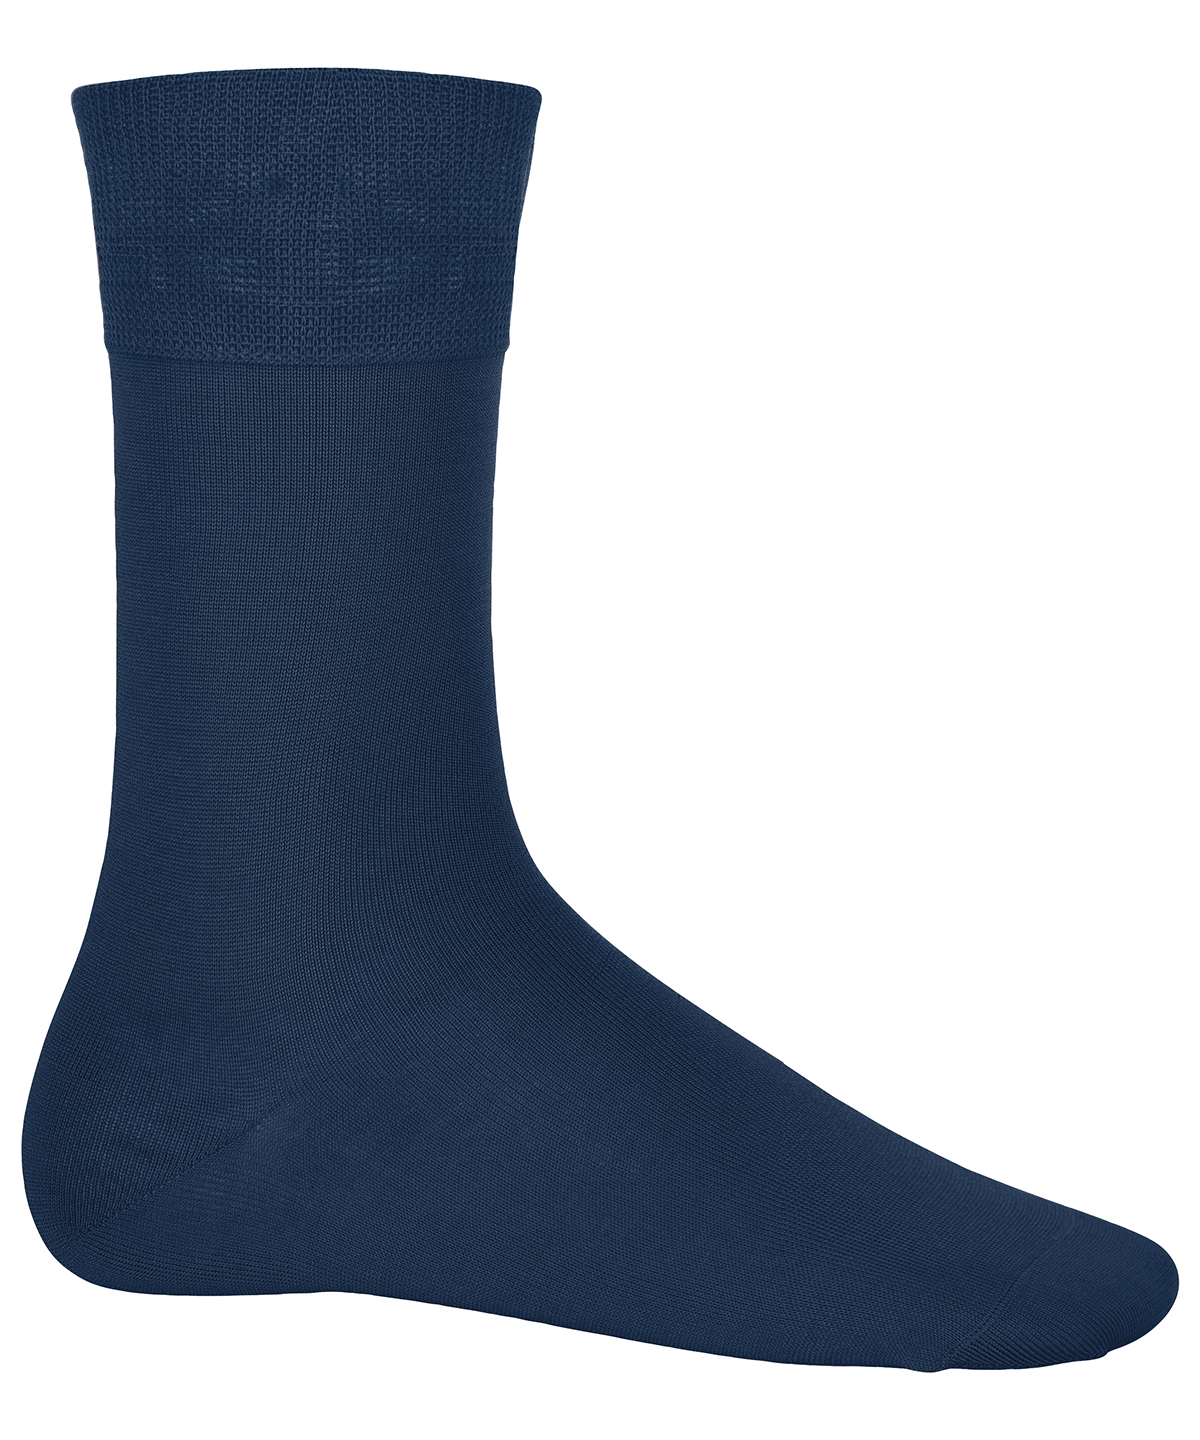 Cotton City Socks Navy Size 1012